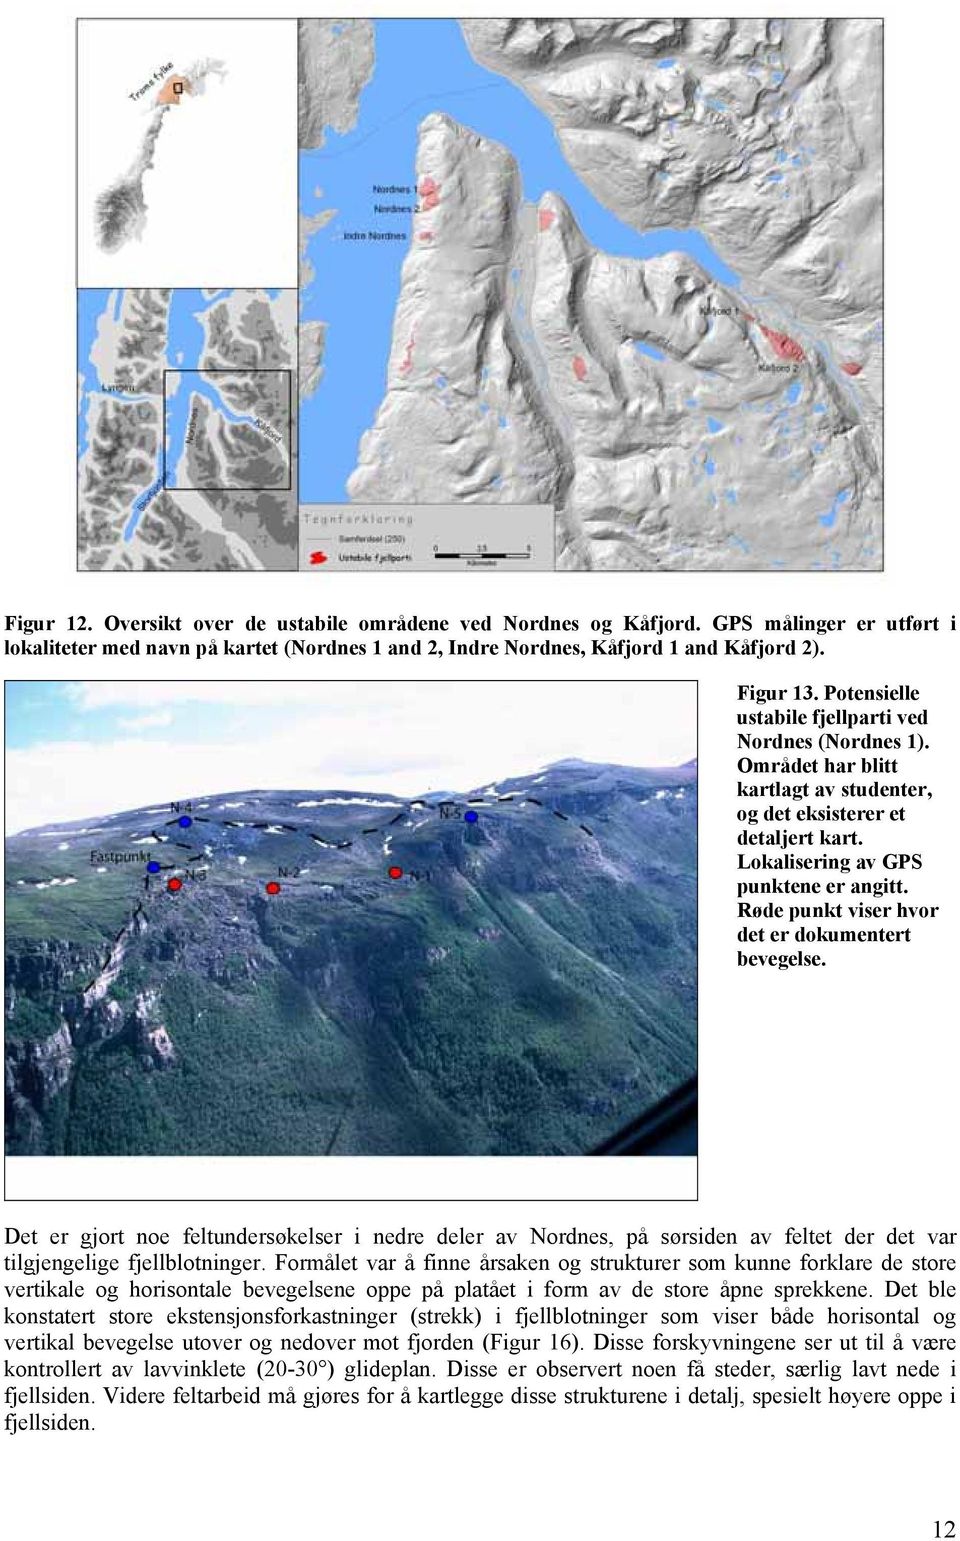 Røde punkt viser hvor det er dokumentert bevegelse. Det er gjort noe feltundersøkelser i nedre deler av Nordnes, på sørsiden av feltet der det var tilgjengelige fjellblotninger.